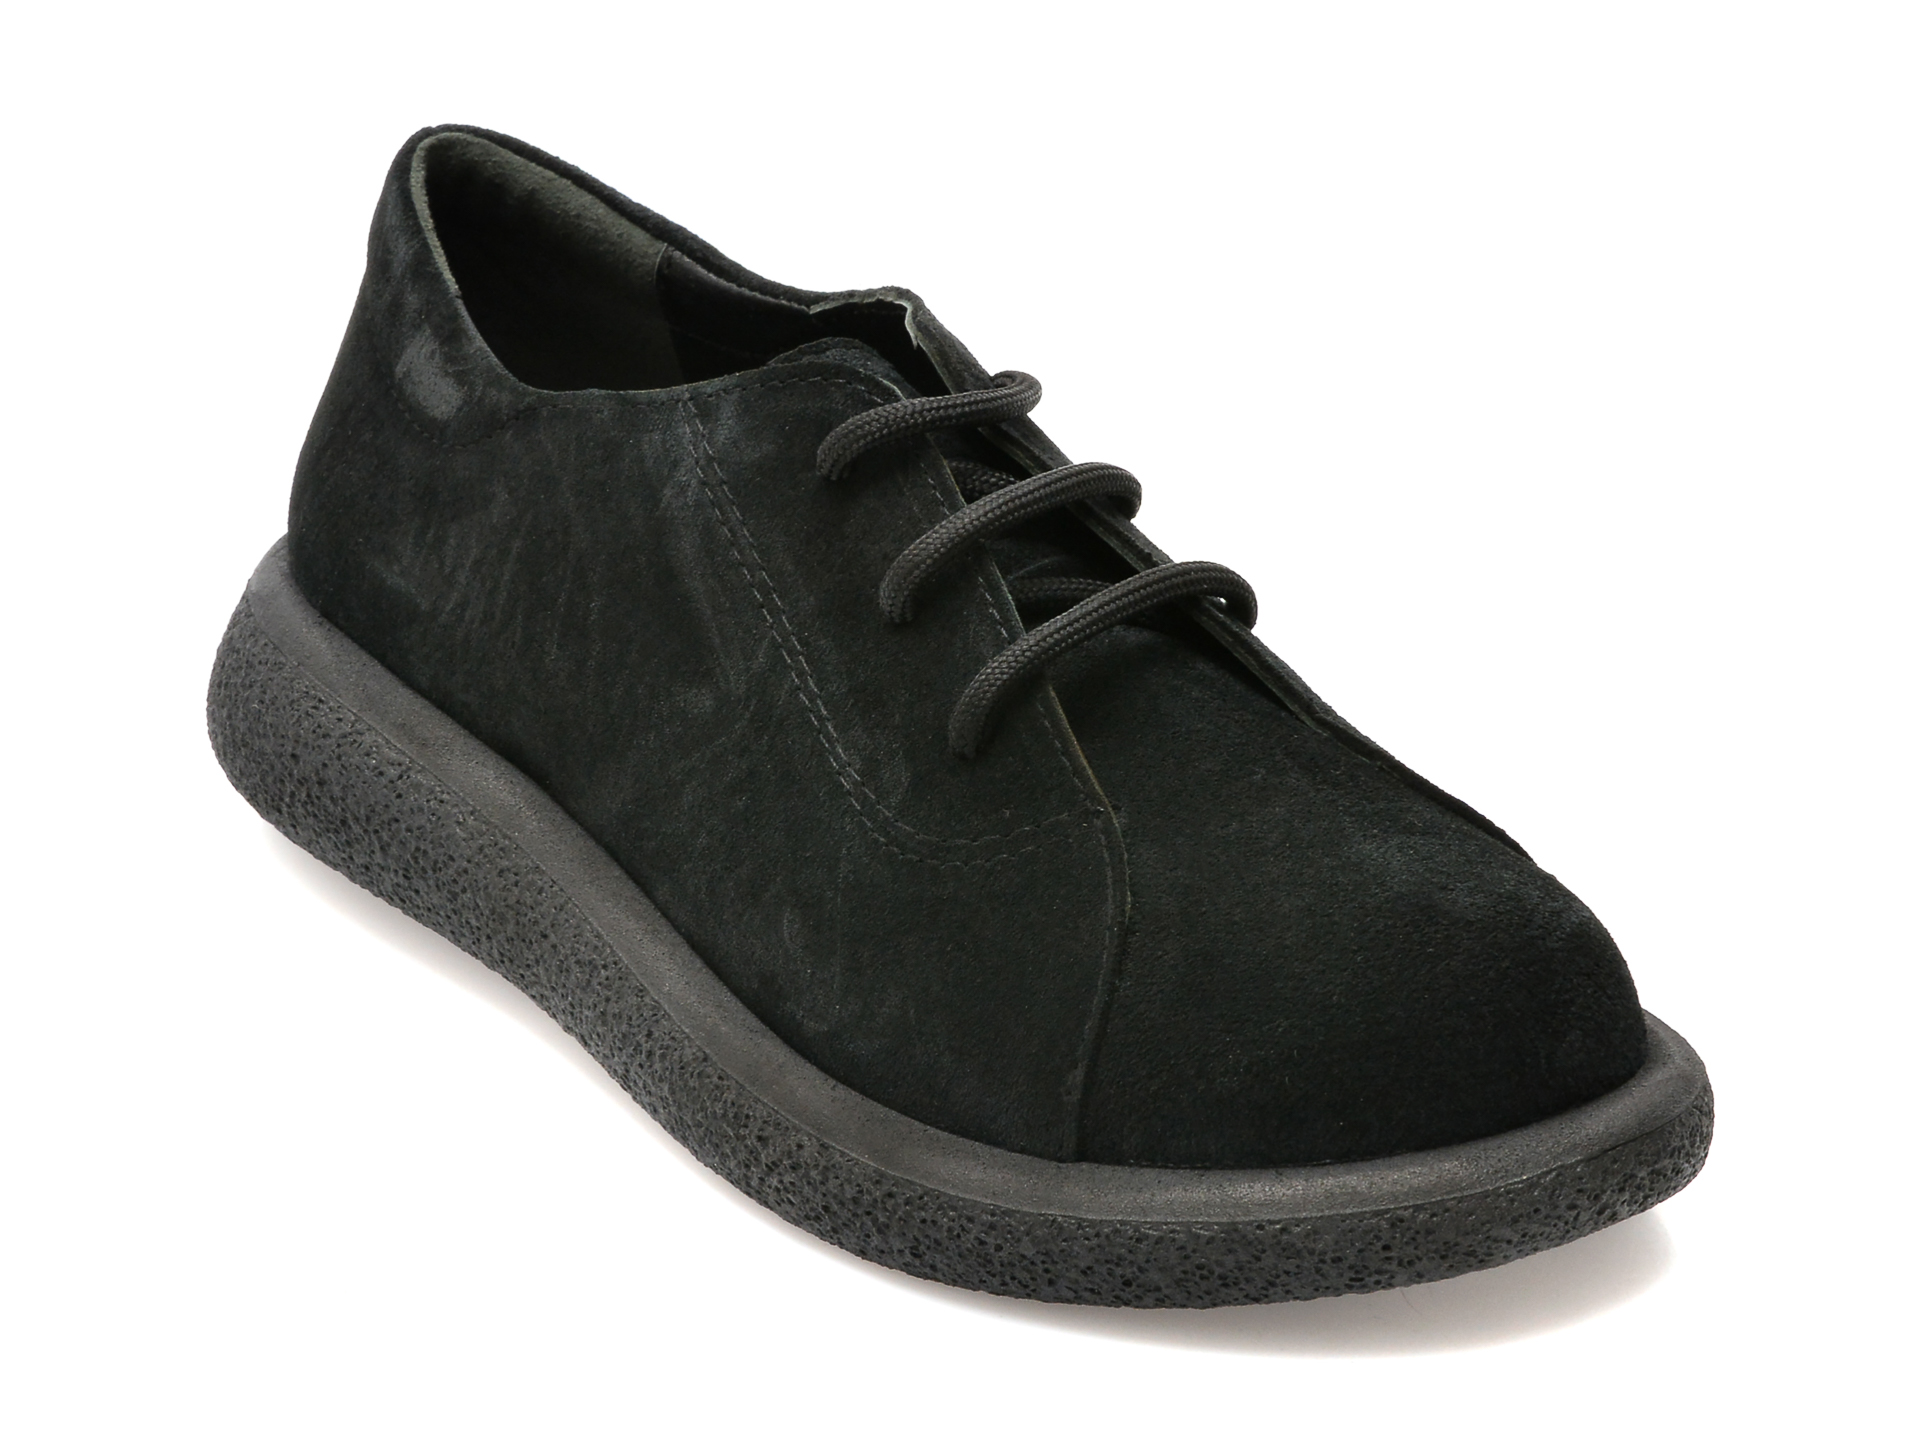 Pantofi FLAVIA PASSINI negri, 105, din piele intoarsa femei 2023-03-21